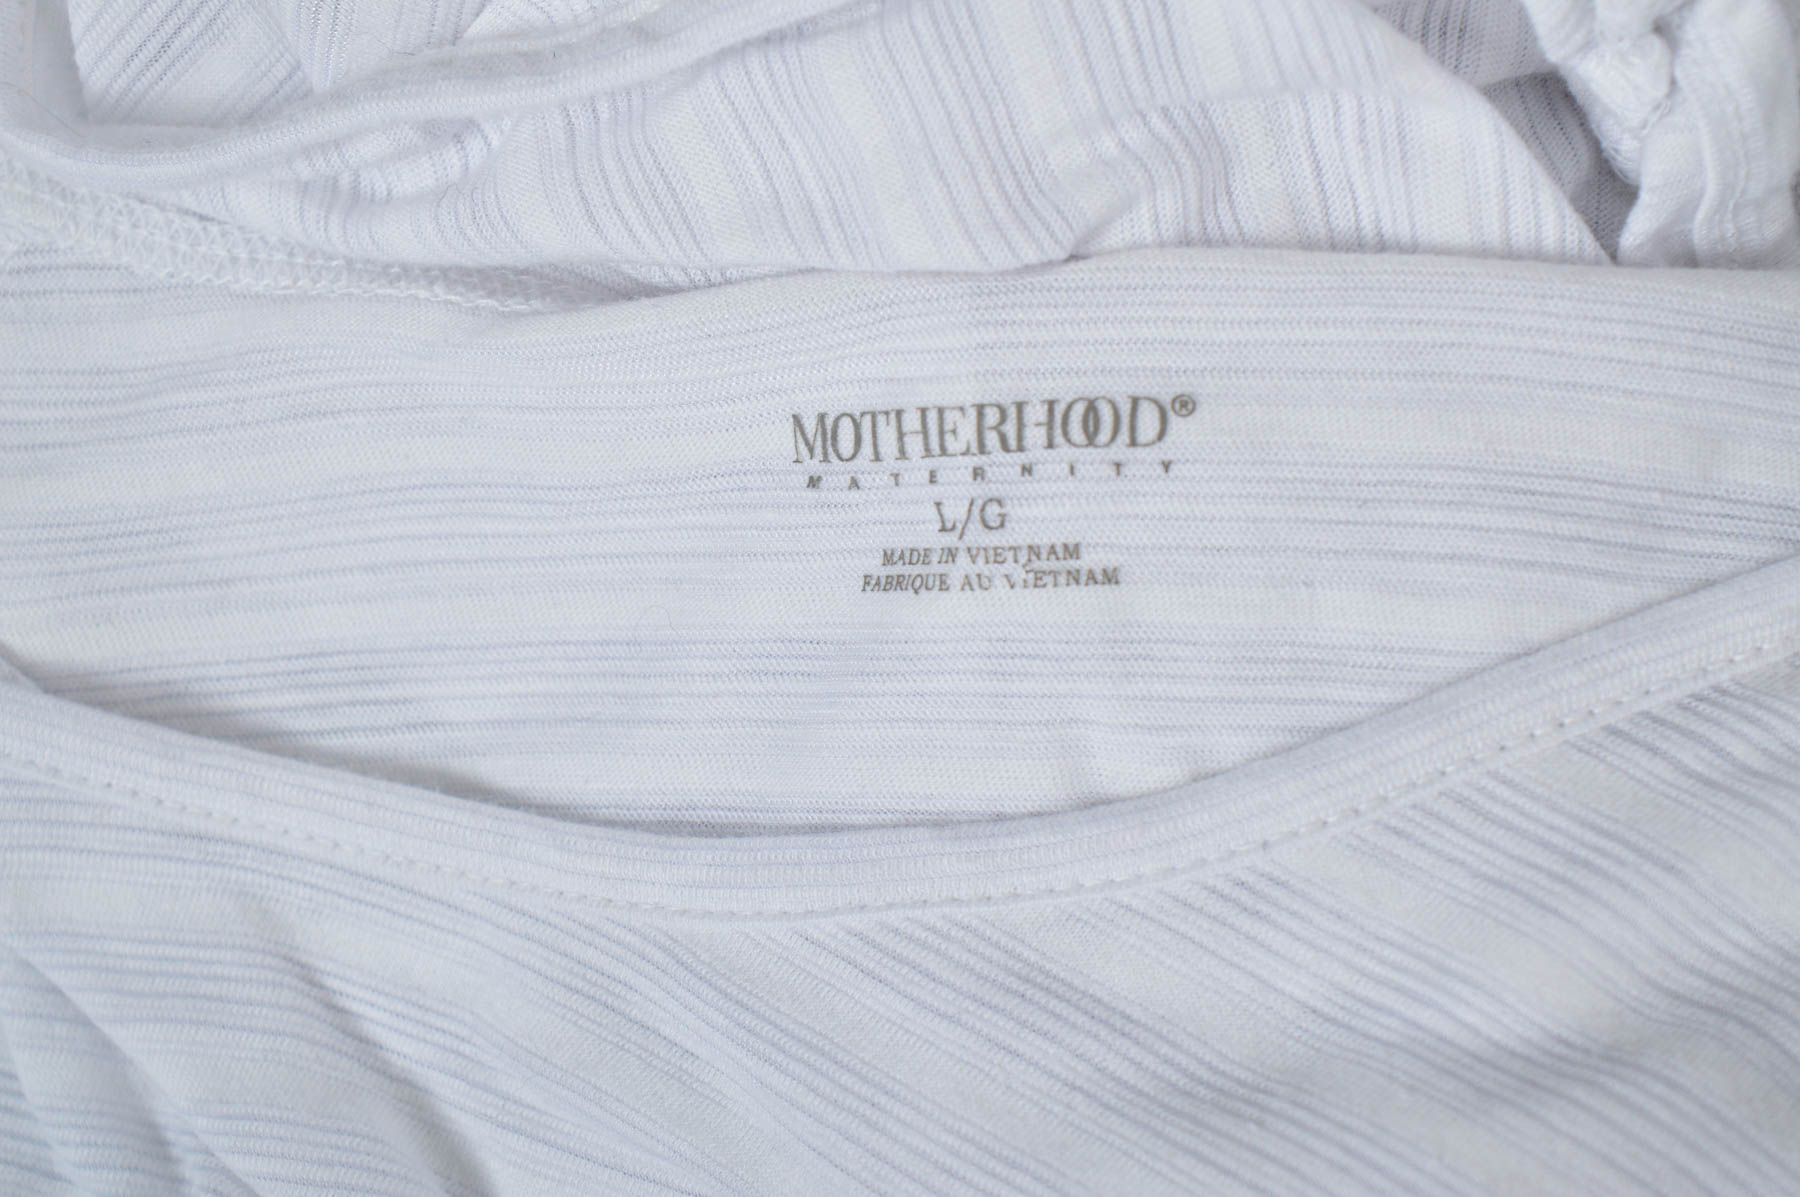 Women's blouse for pregnant women - Motherhood Maternity - 2